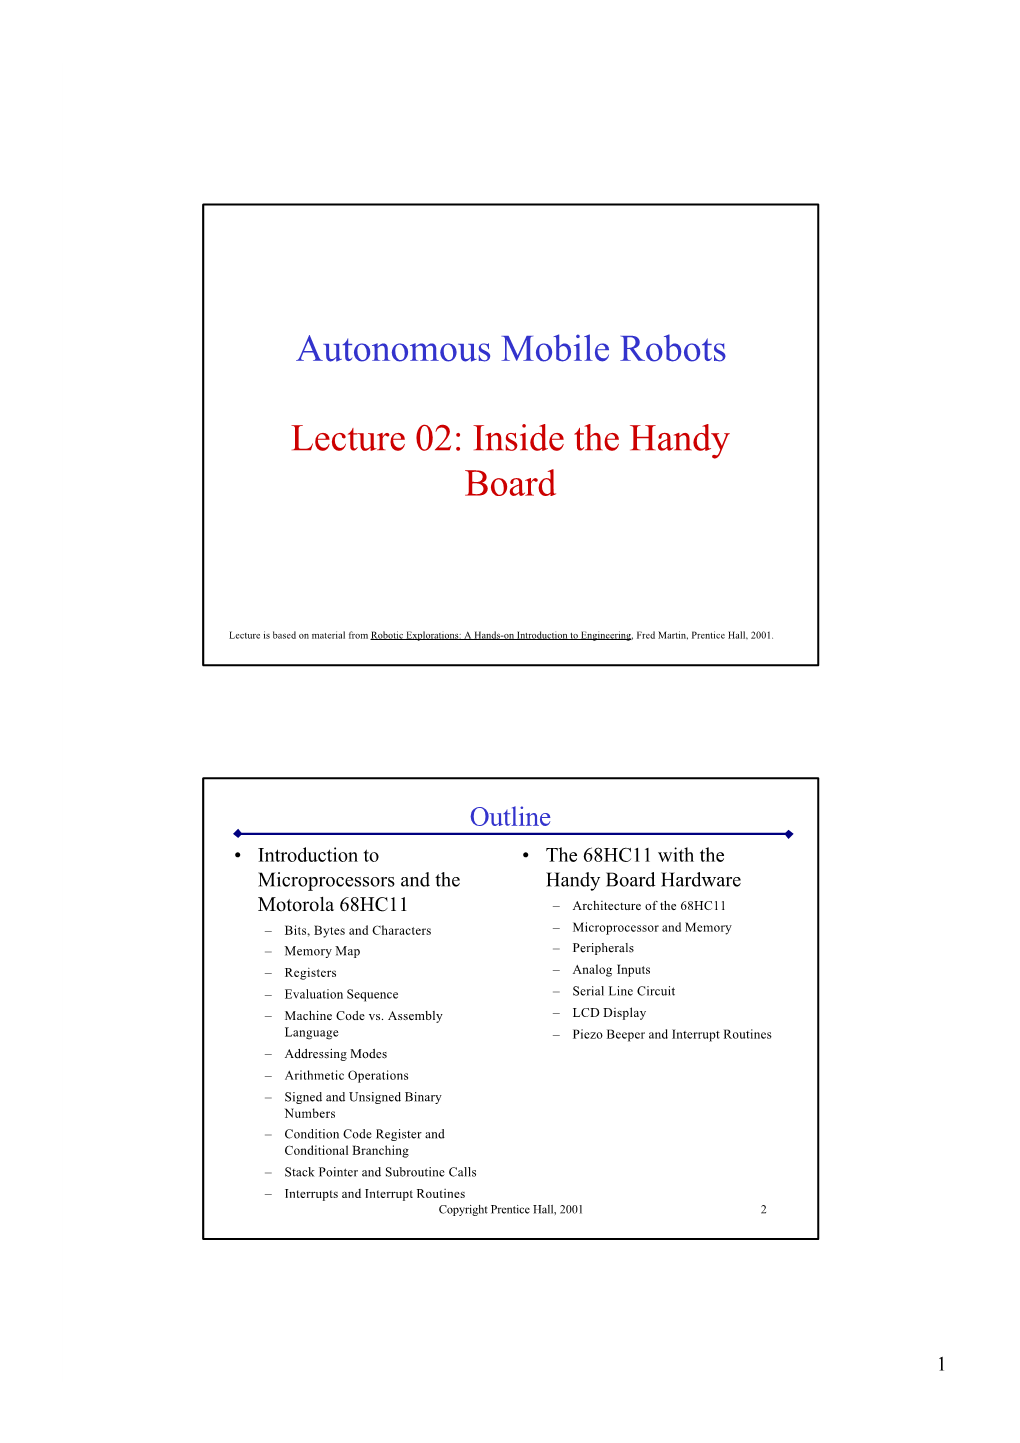 Autonomous Mobile Robots Lecture 02: Inside the Handy Board